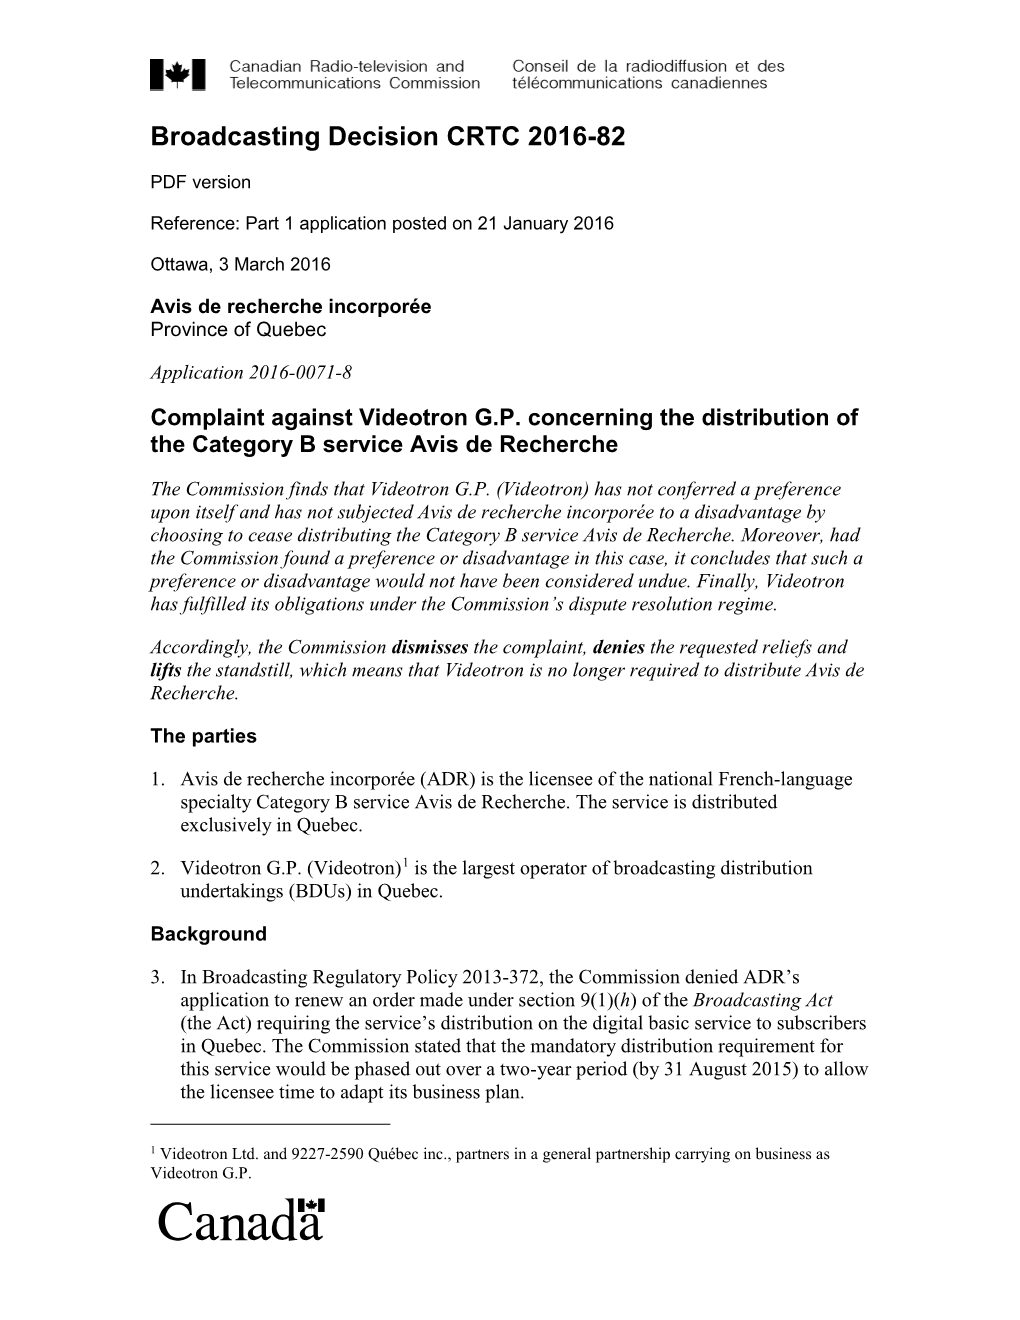 Complaint Against Videotron G.P. Concerning the Distribution of the Category B Service Avis De Recherche